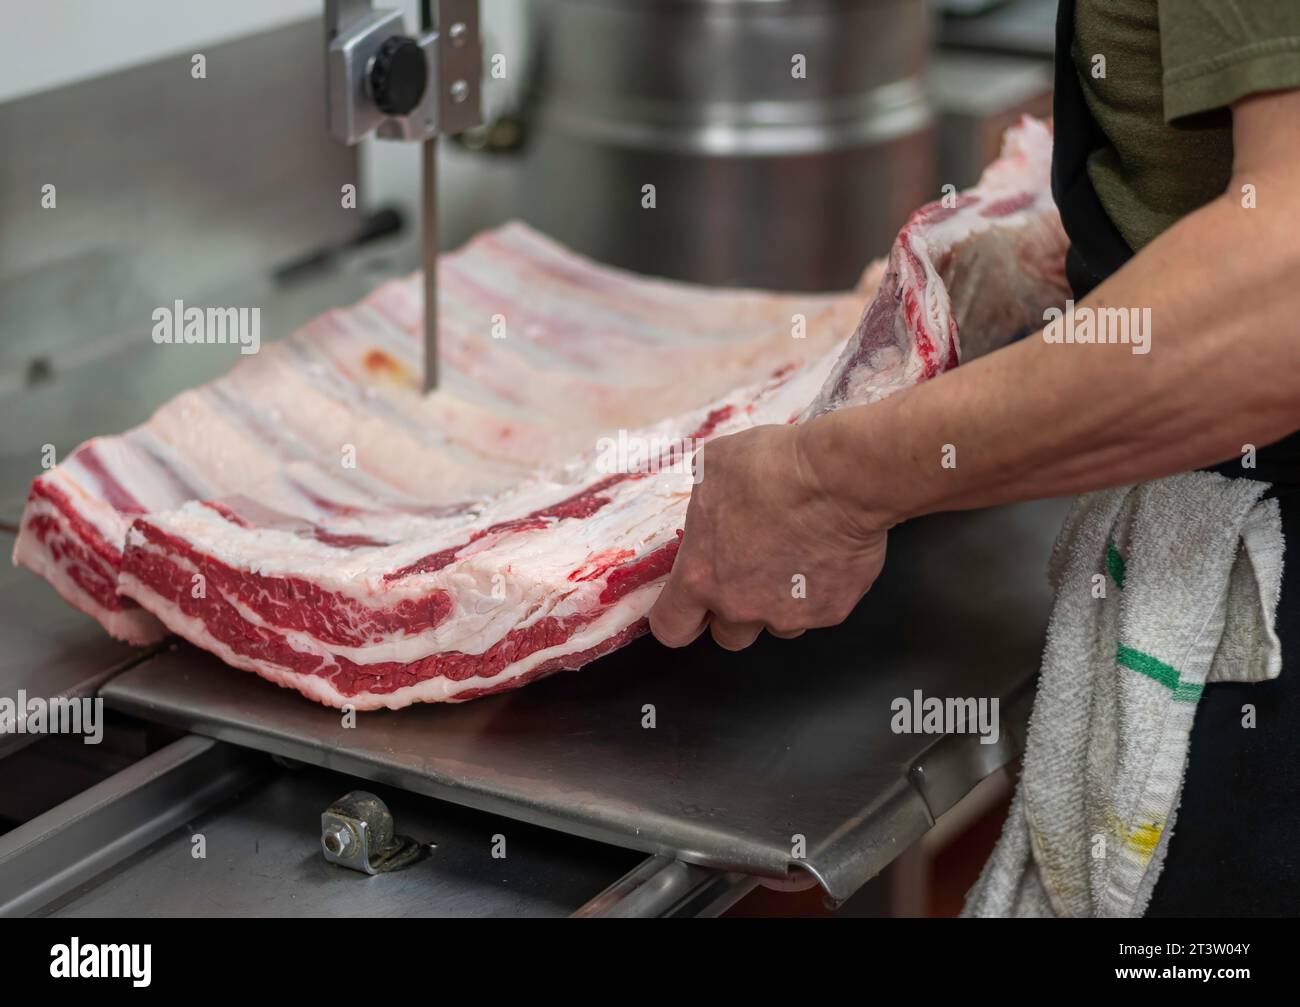 Immagine isolata e ravvicinata ad alta risoluzione del processo di taglio e preparazione della carne di manzo/carne in una macelleria boutique - USA Foto Stock